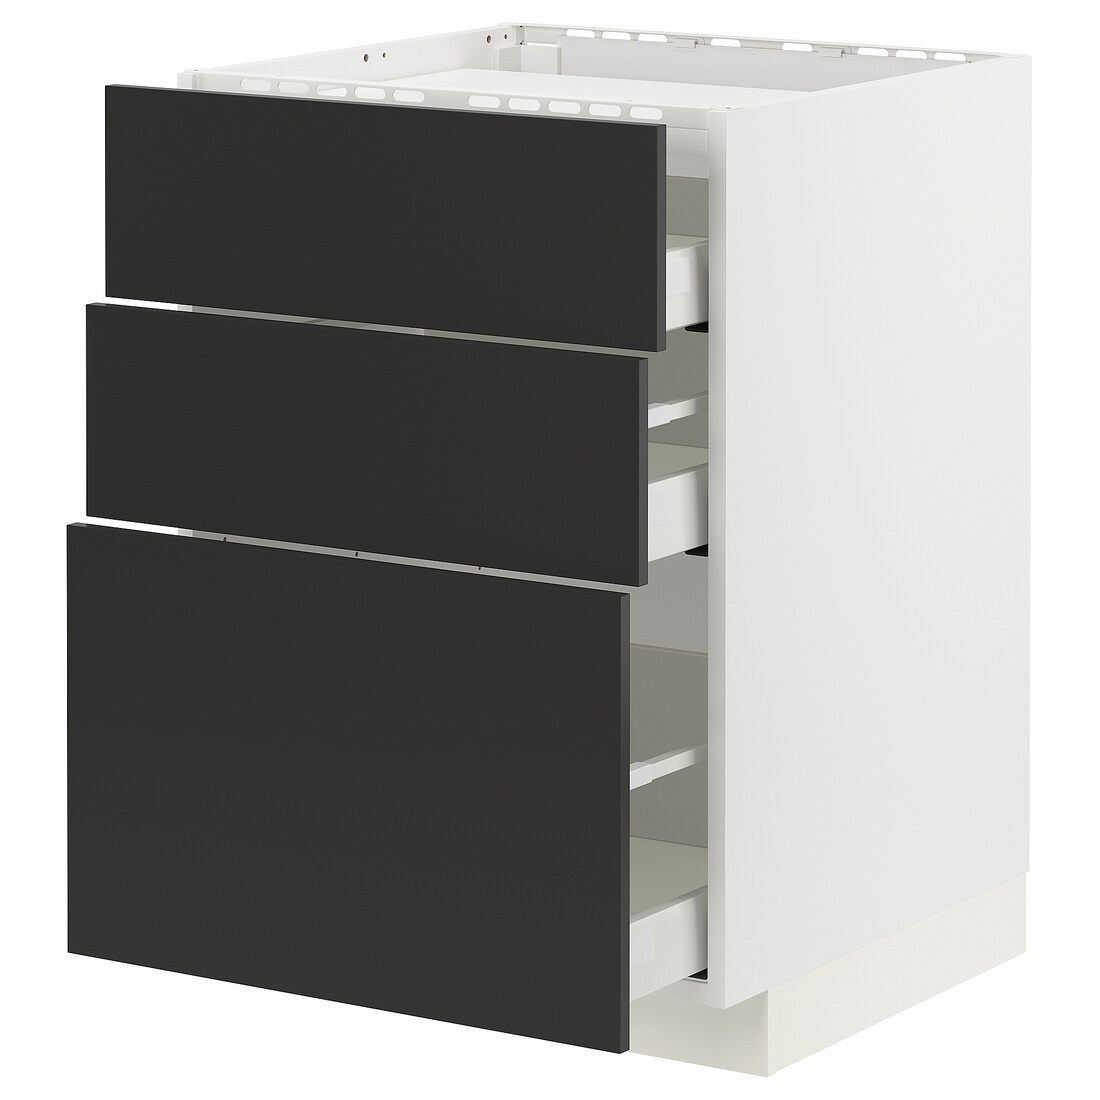 IKEA METOD МЕТОД / MAXIMERA МАКСИМЕРА Шкаф для варочной панели / 3 ящика, белый / Nickebo матовый антрацит, 60x60 см 49497876 494.978.76